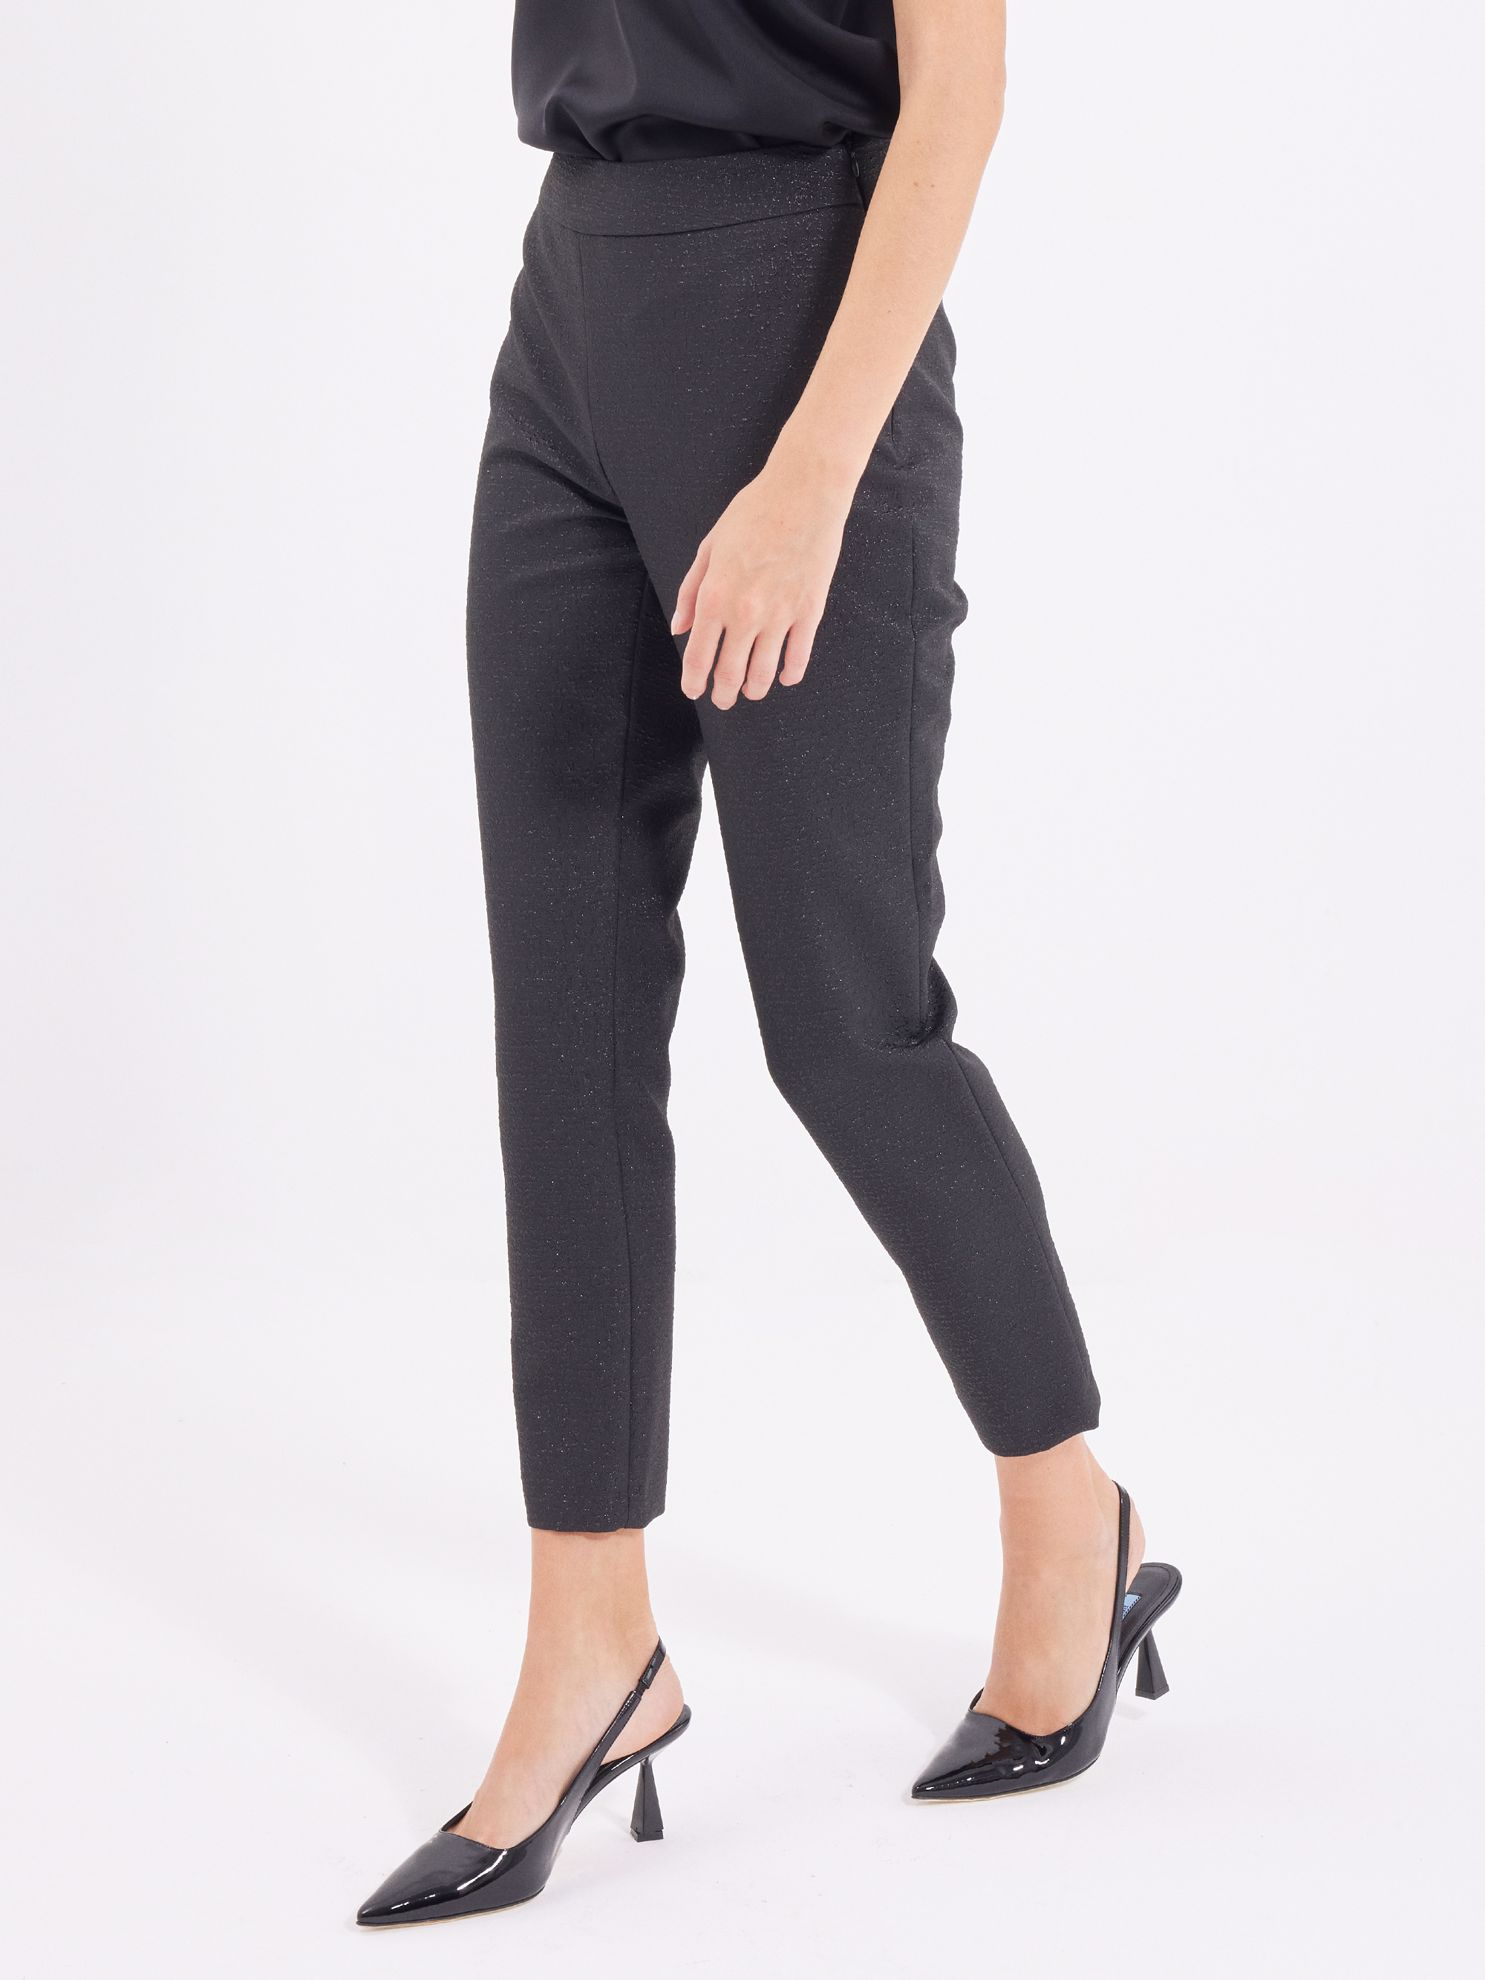 Karaca Kadın Pantolon-Siyah. ürün görseli